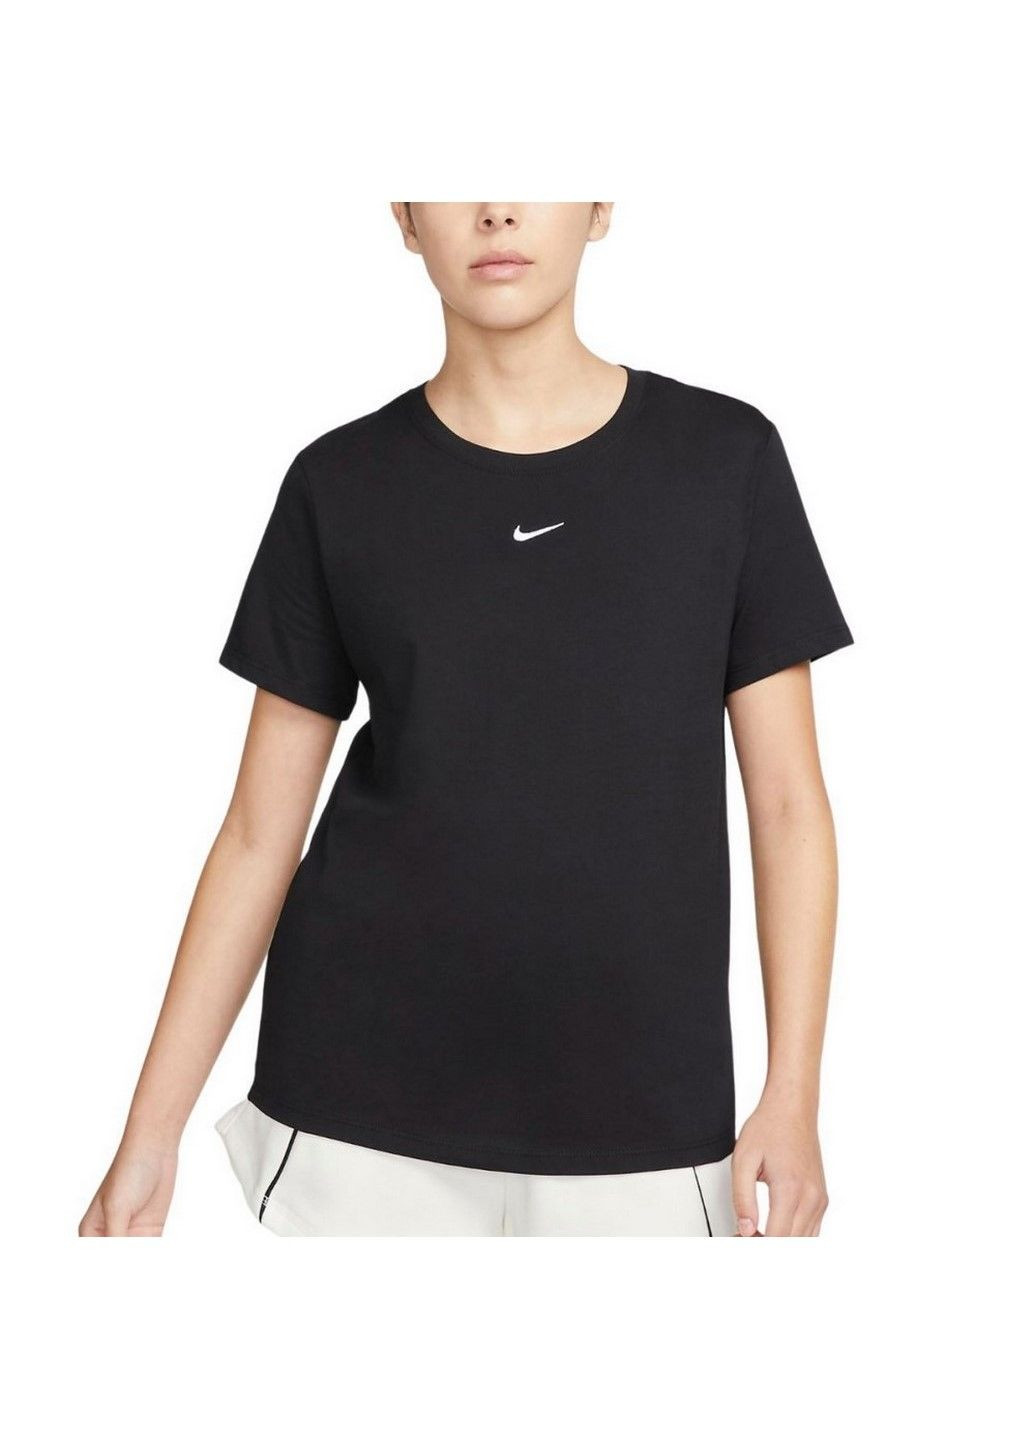 Чорна літня футболка w nsw tee essntl crew lbr dx7904-010 Nike